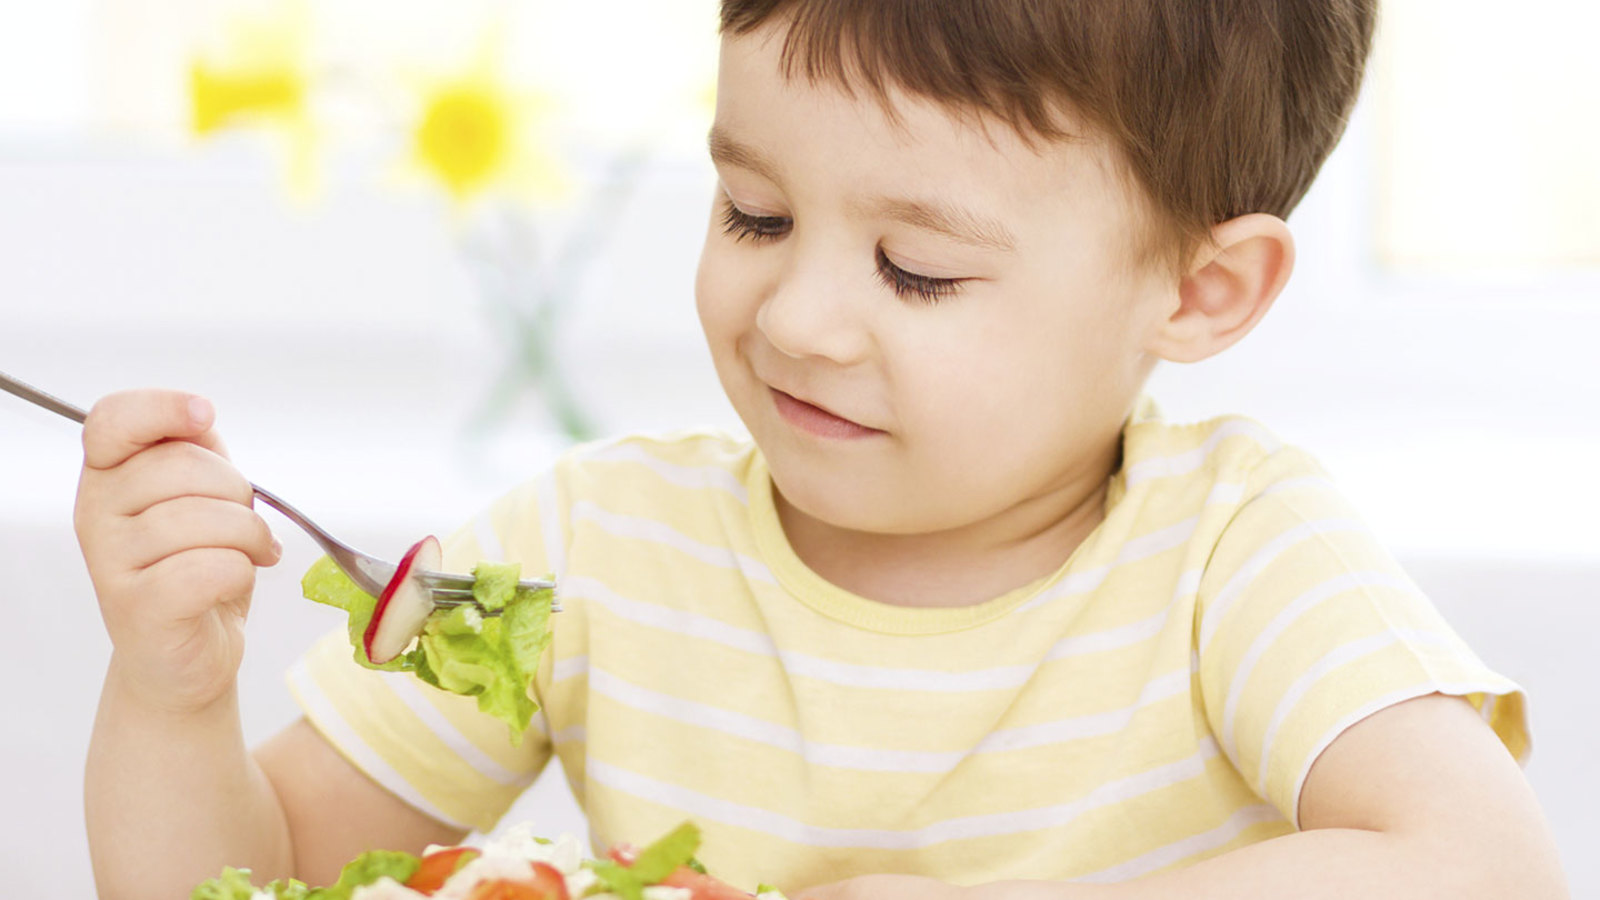 Anamnese Nutricional Infantil - Alimentação Escolar